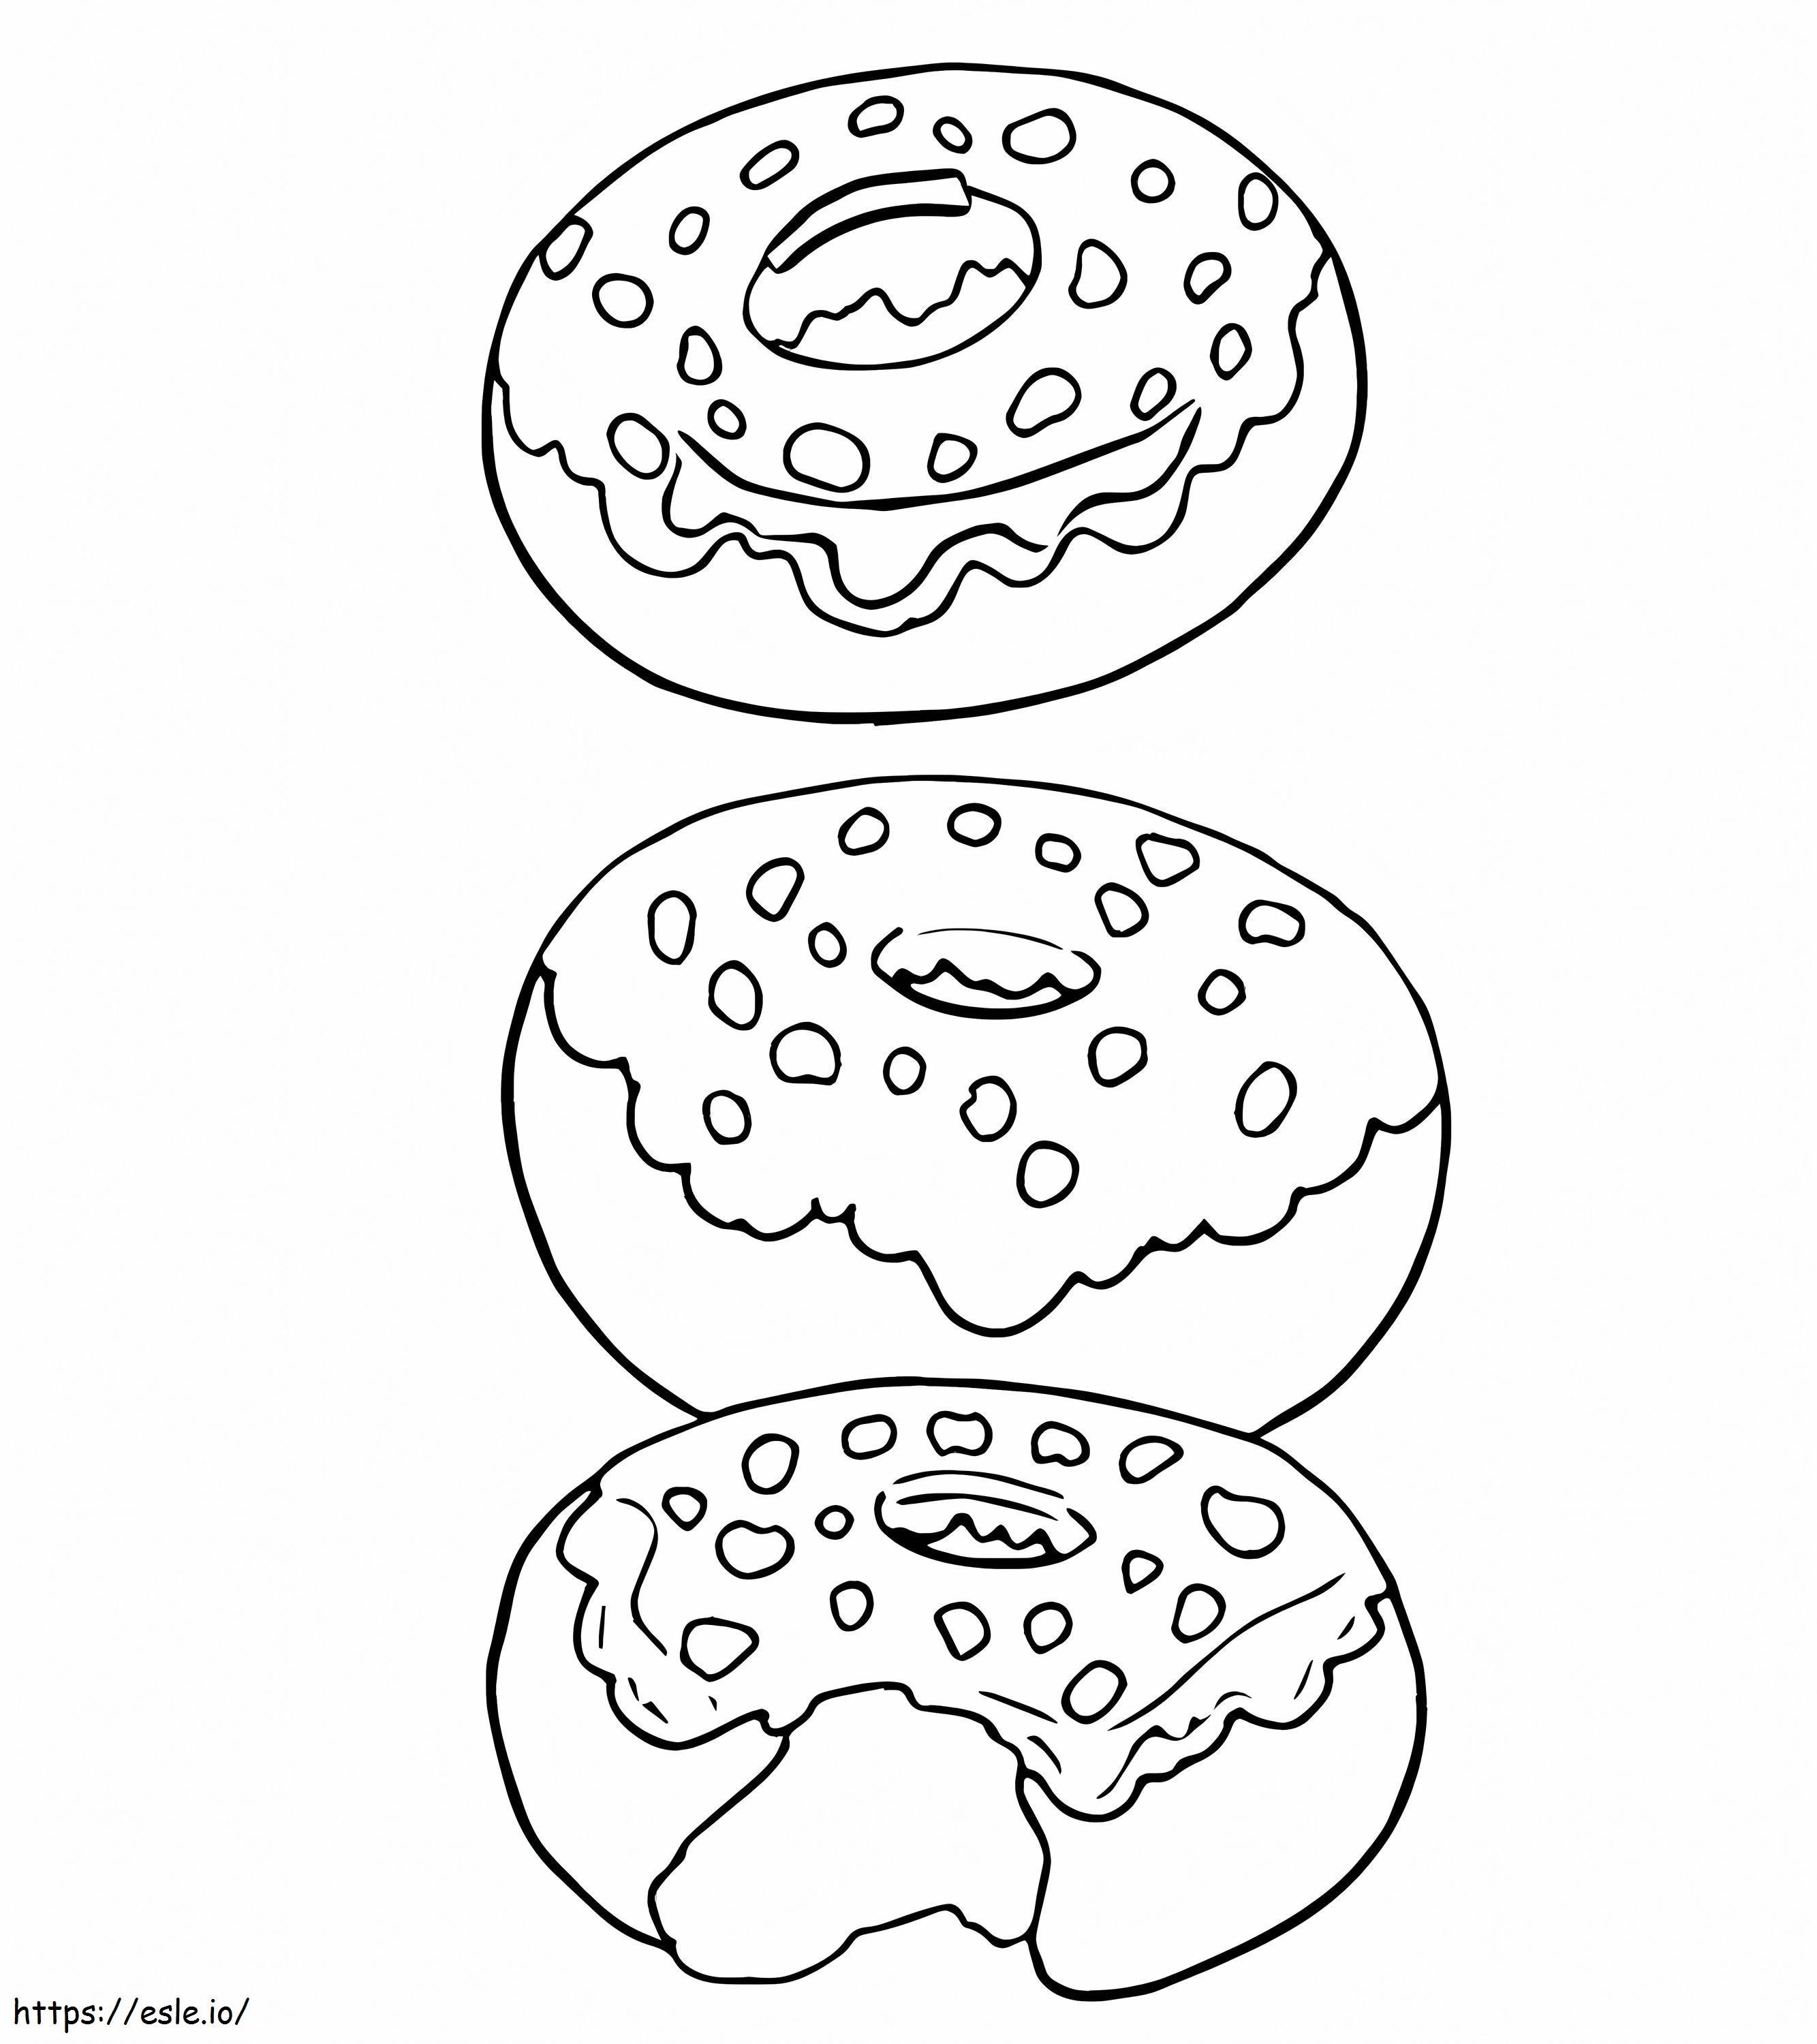 Leckerer Donut ausmalbilder